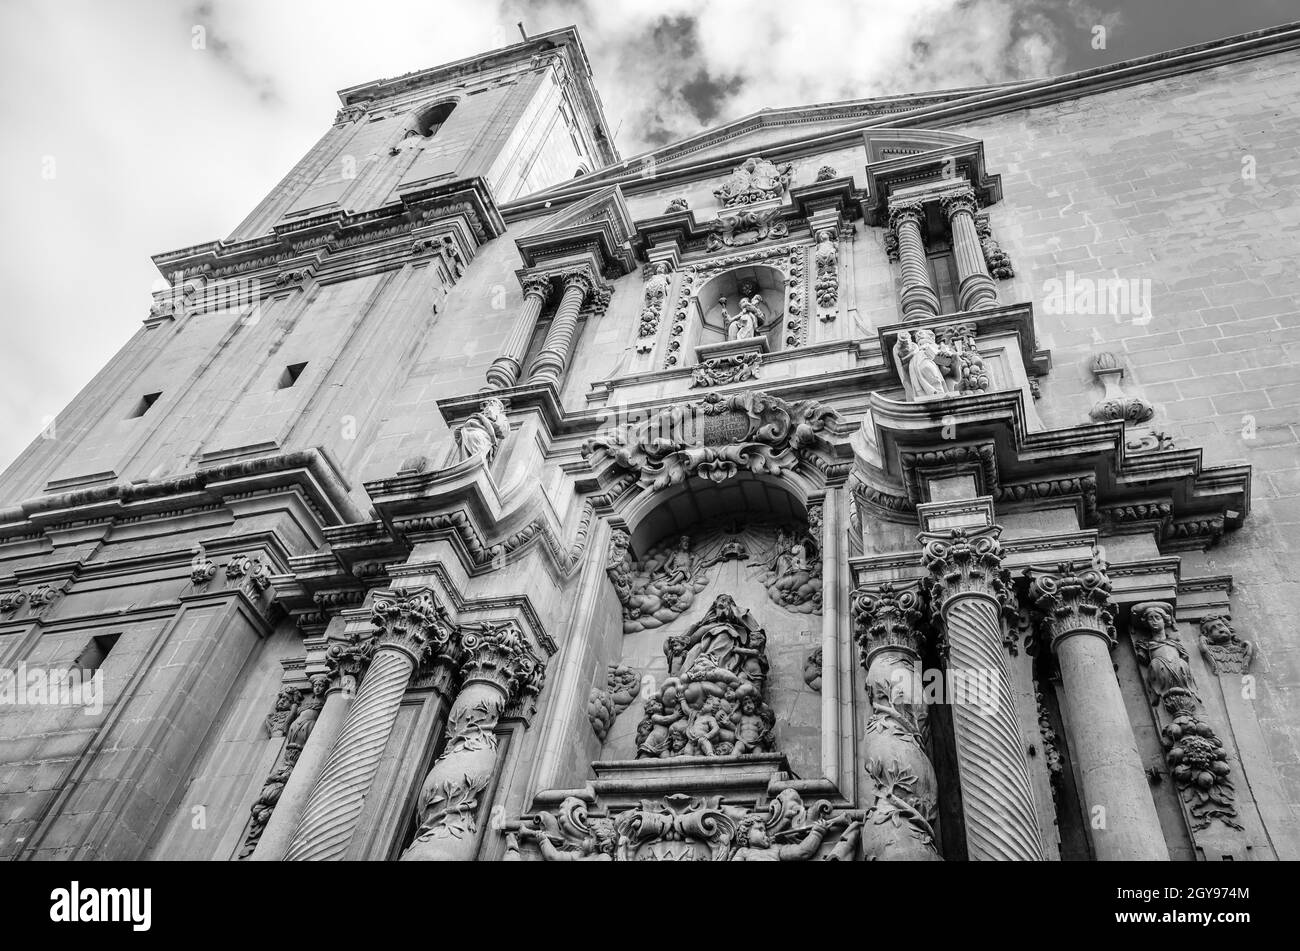 Vue sur la basilique baroque de la ville d'Elche, province d'Alicante, Espagne; image en noir et blanc Banque D'Images